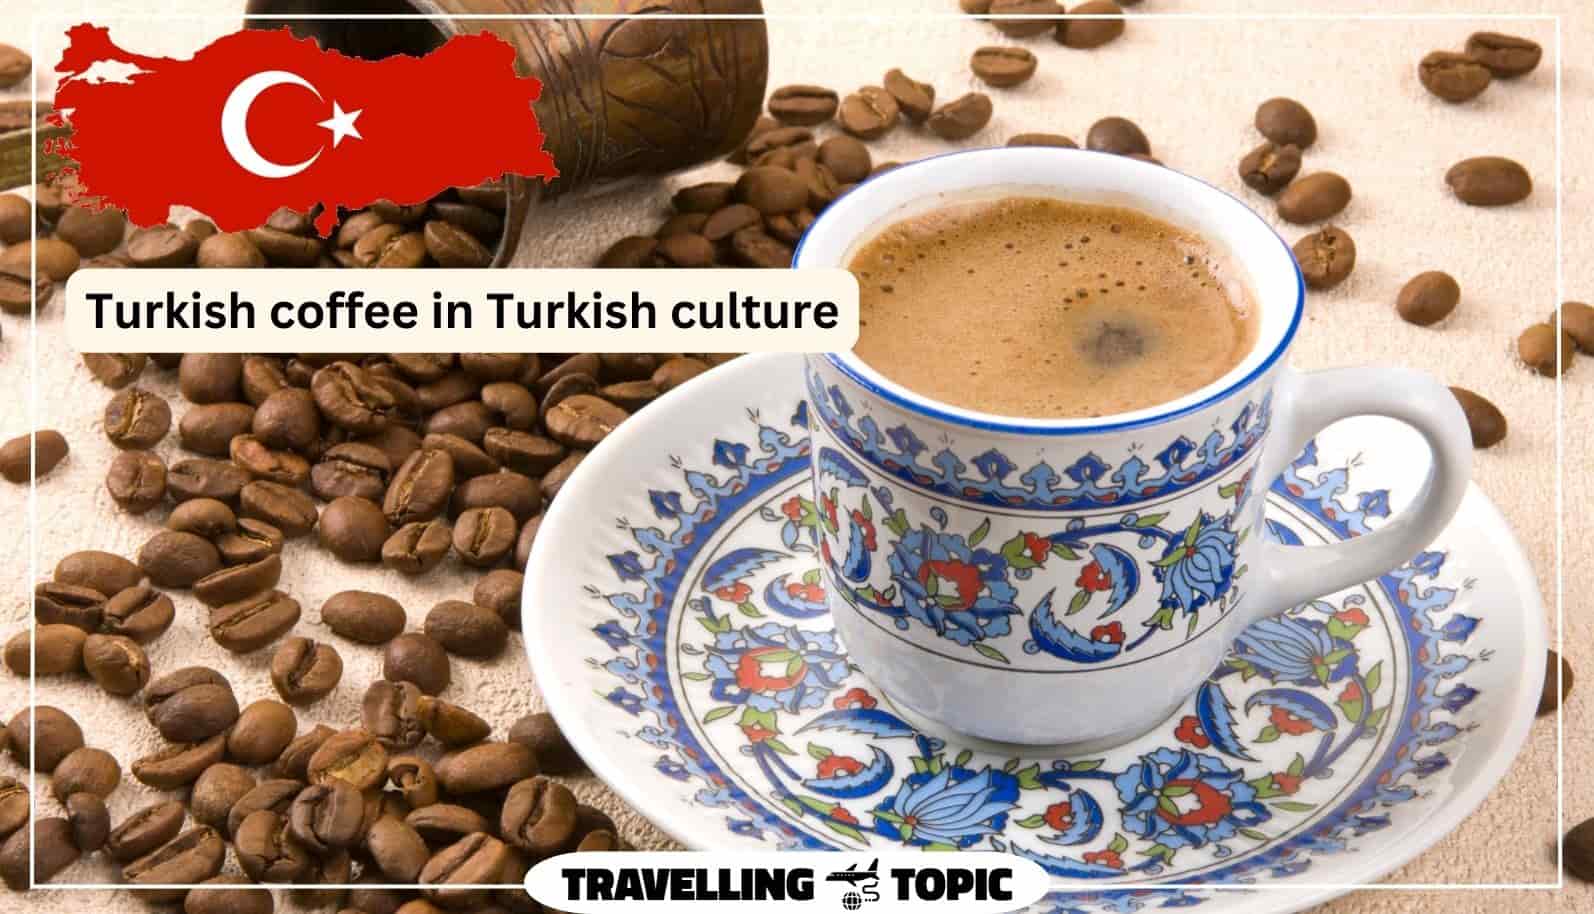 Turkish coffee in Turkish culture